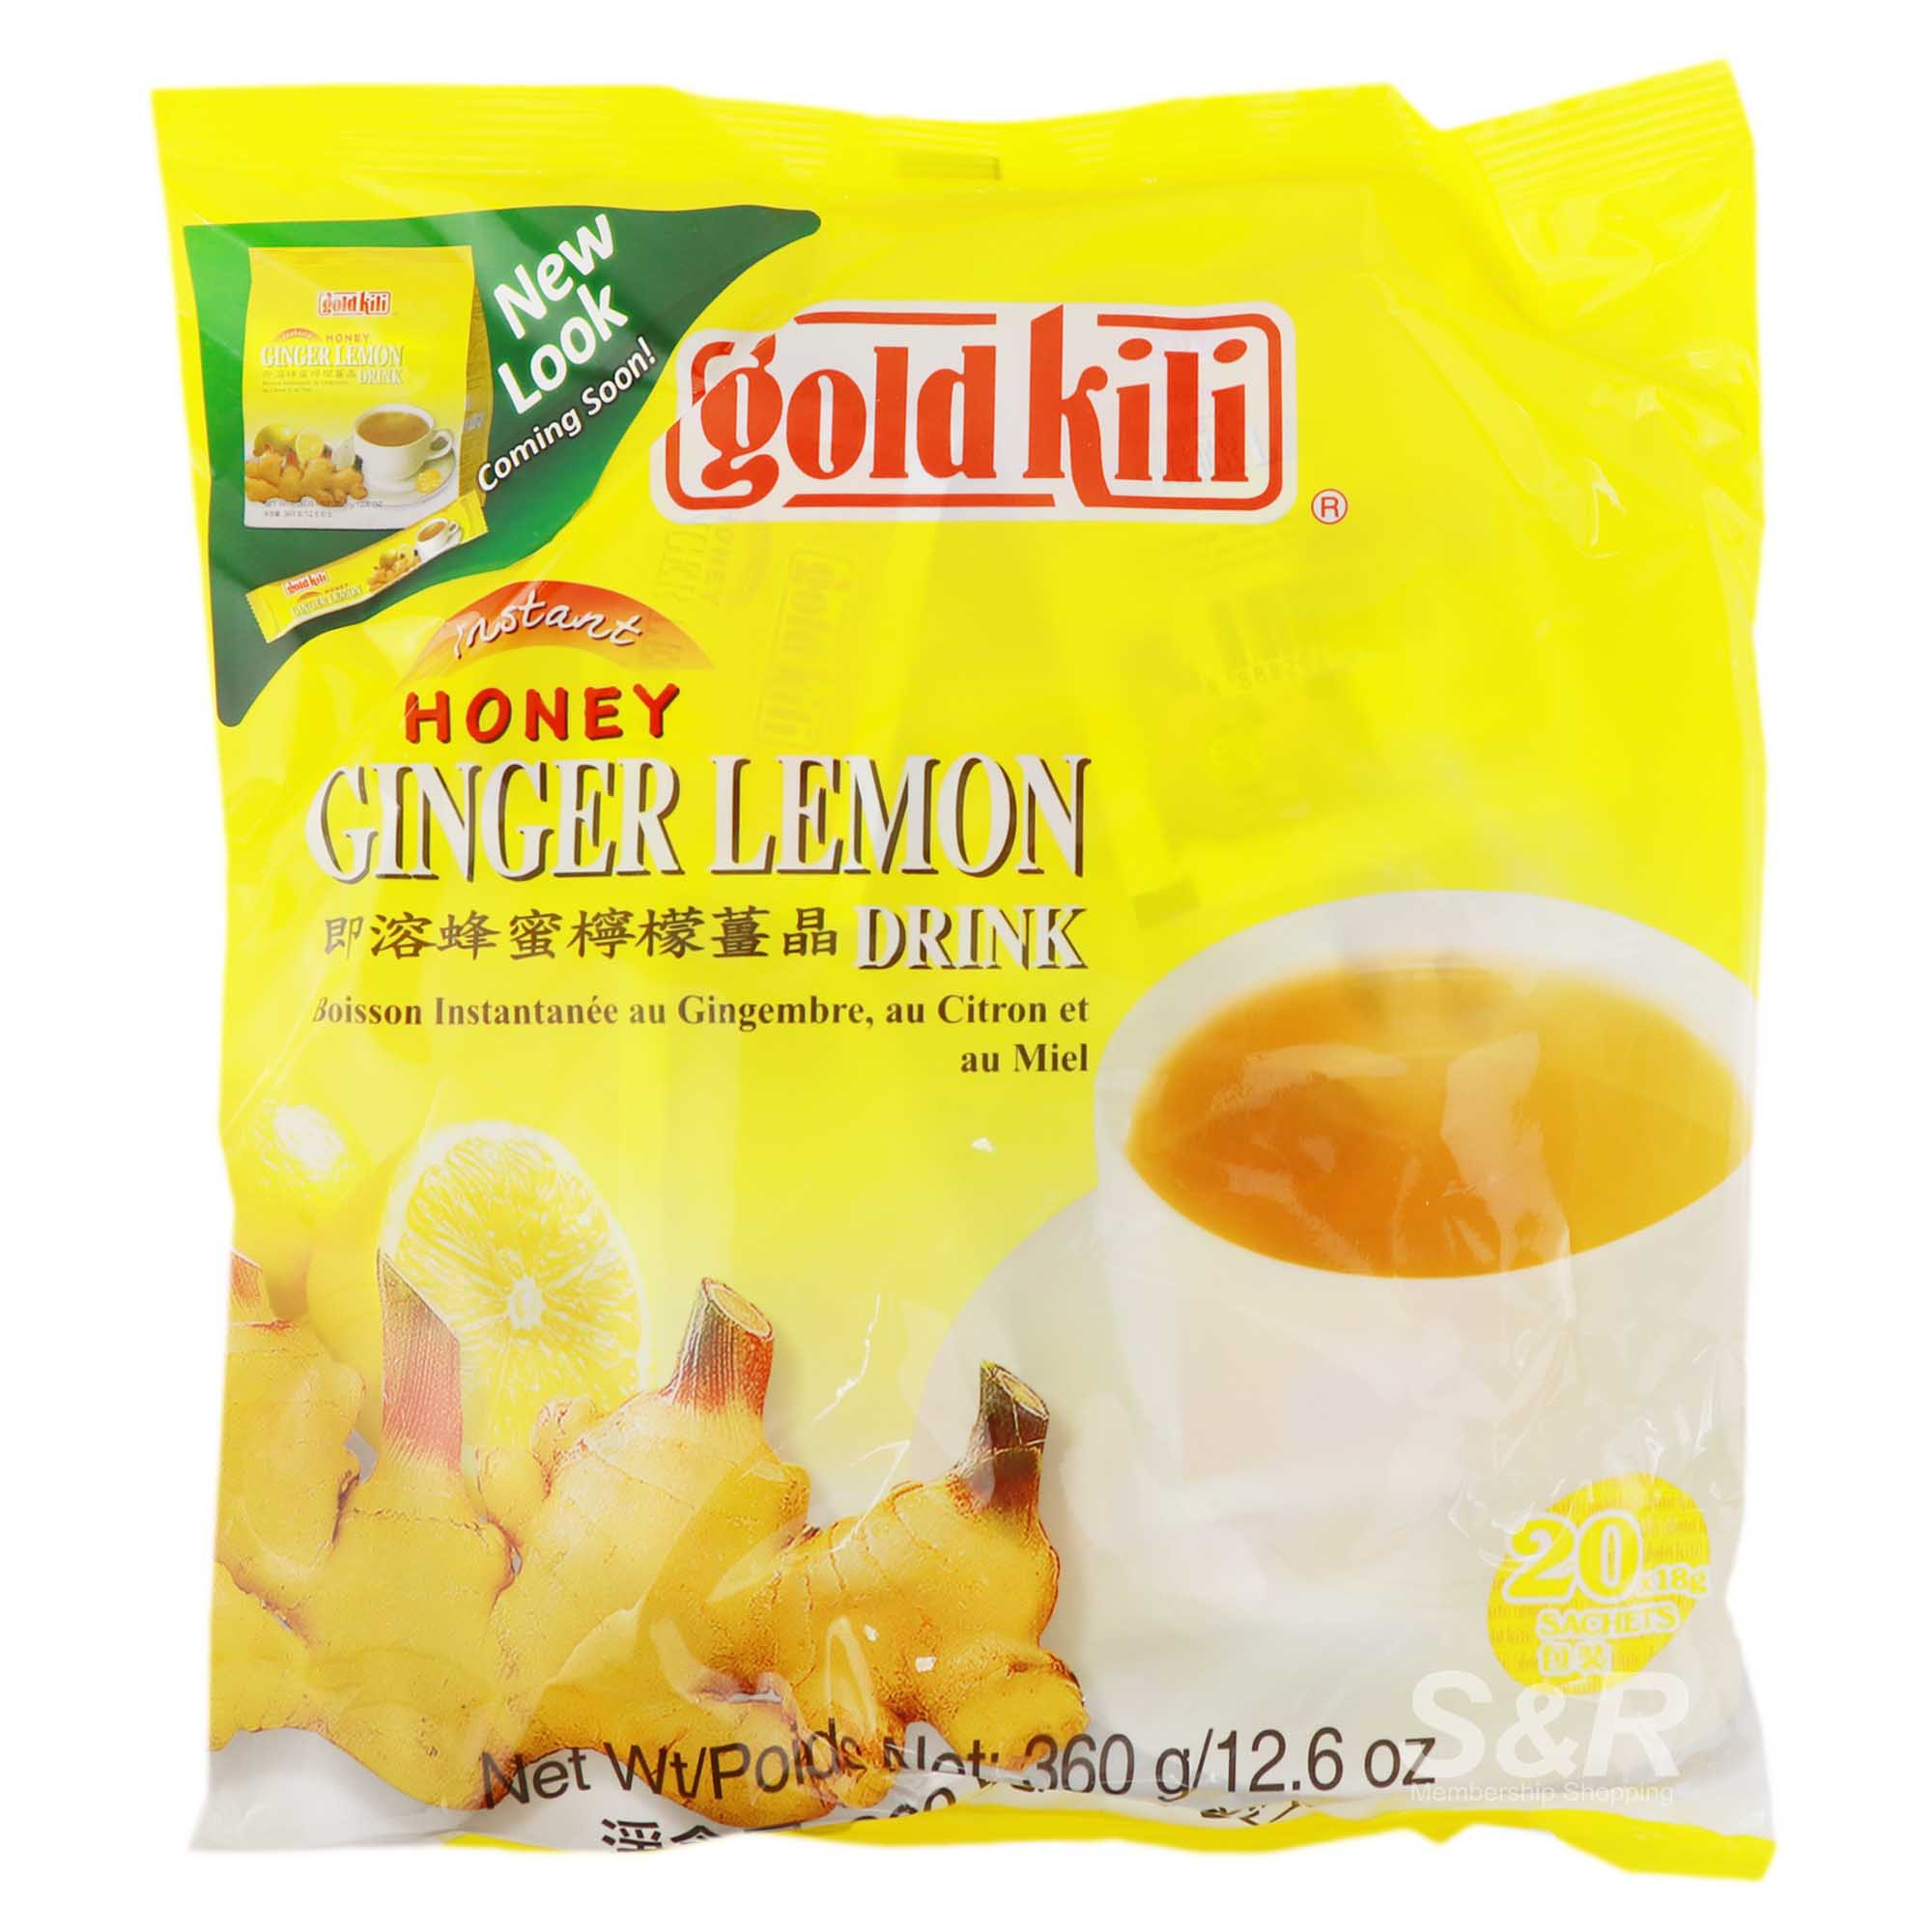 Gold Kili Instant Honey Ginger Lemon Drink 20 sachet sticks